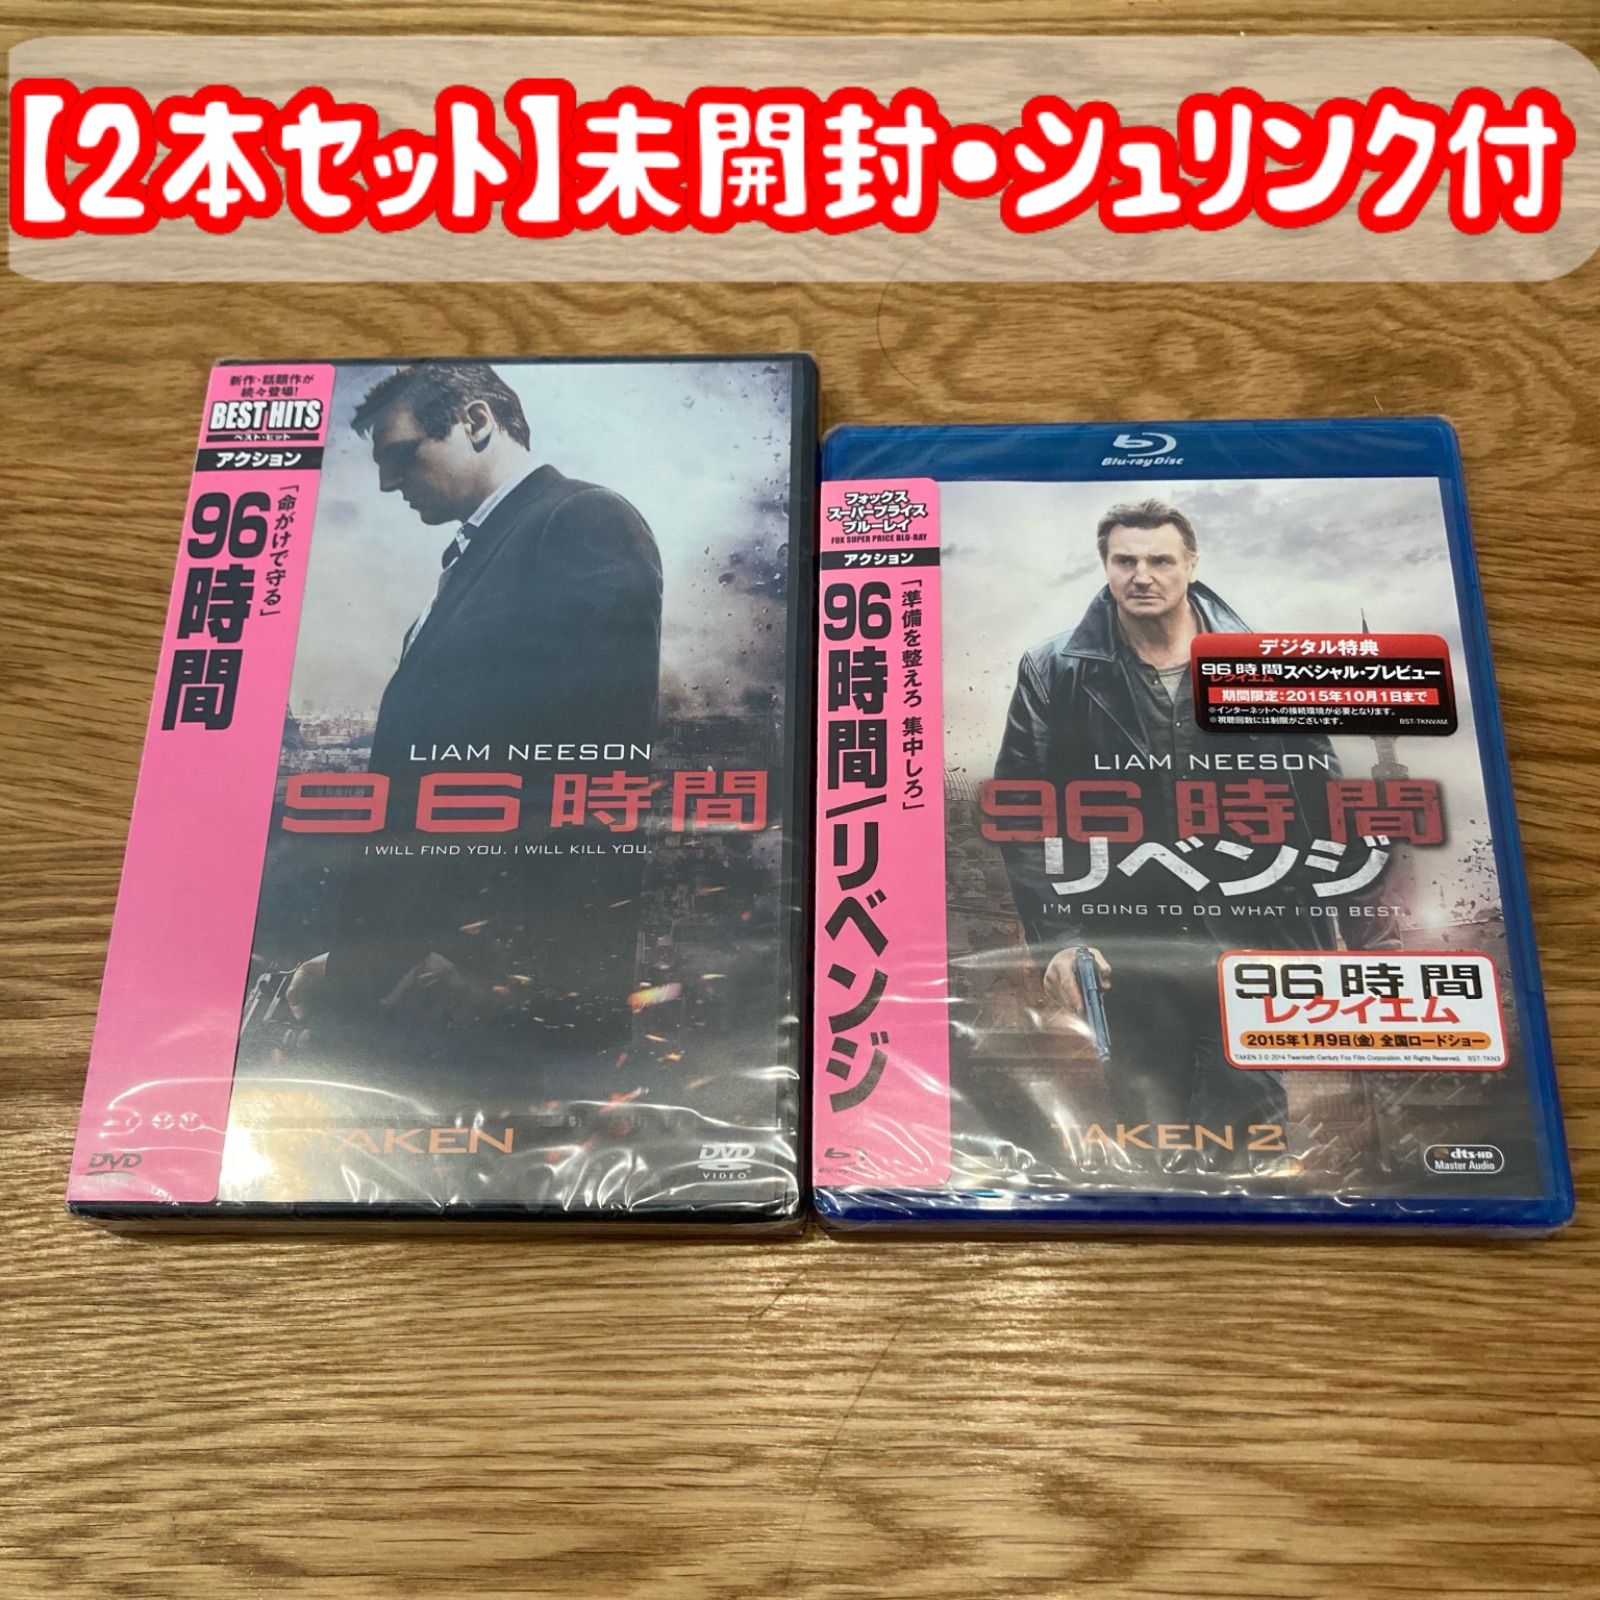 日本産】 林遣都 出演作 DVD・Blu-rayセット TVドラマ - www ...